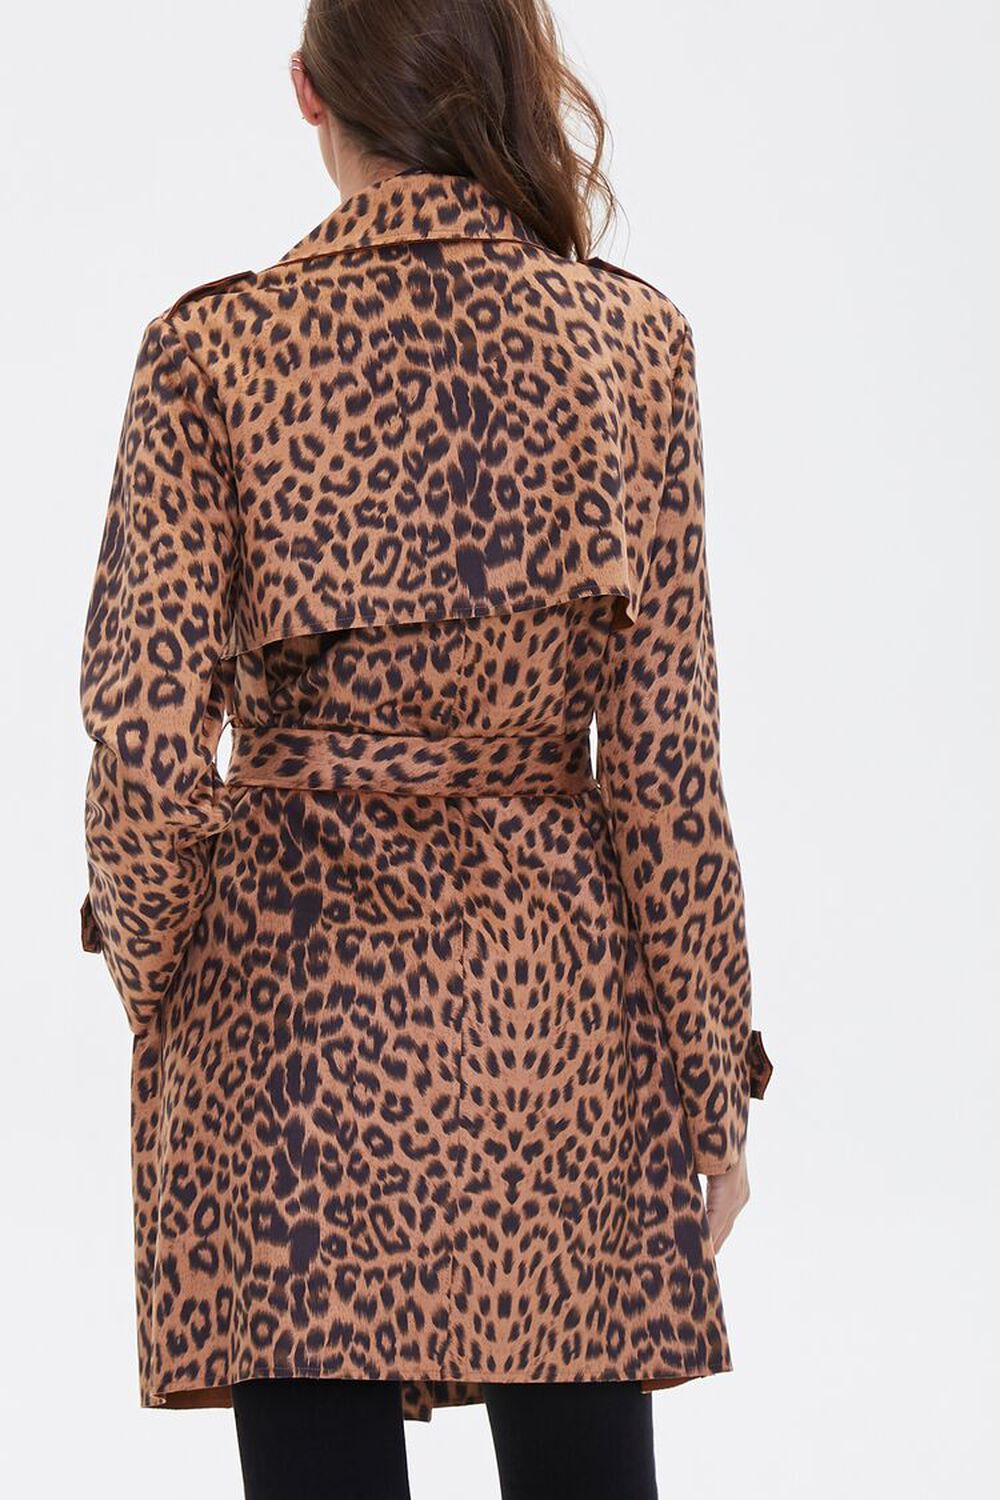 Leopard Print Wrap Jacket